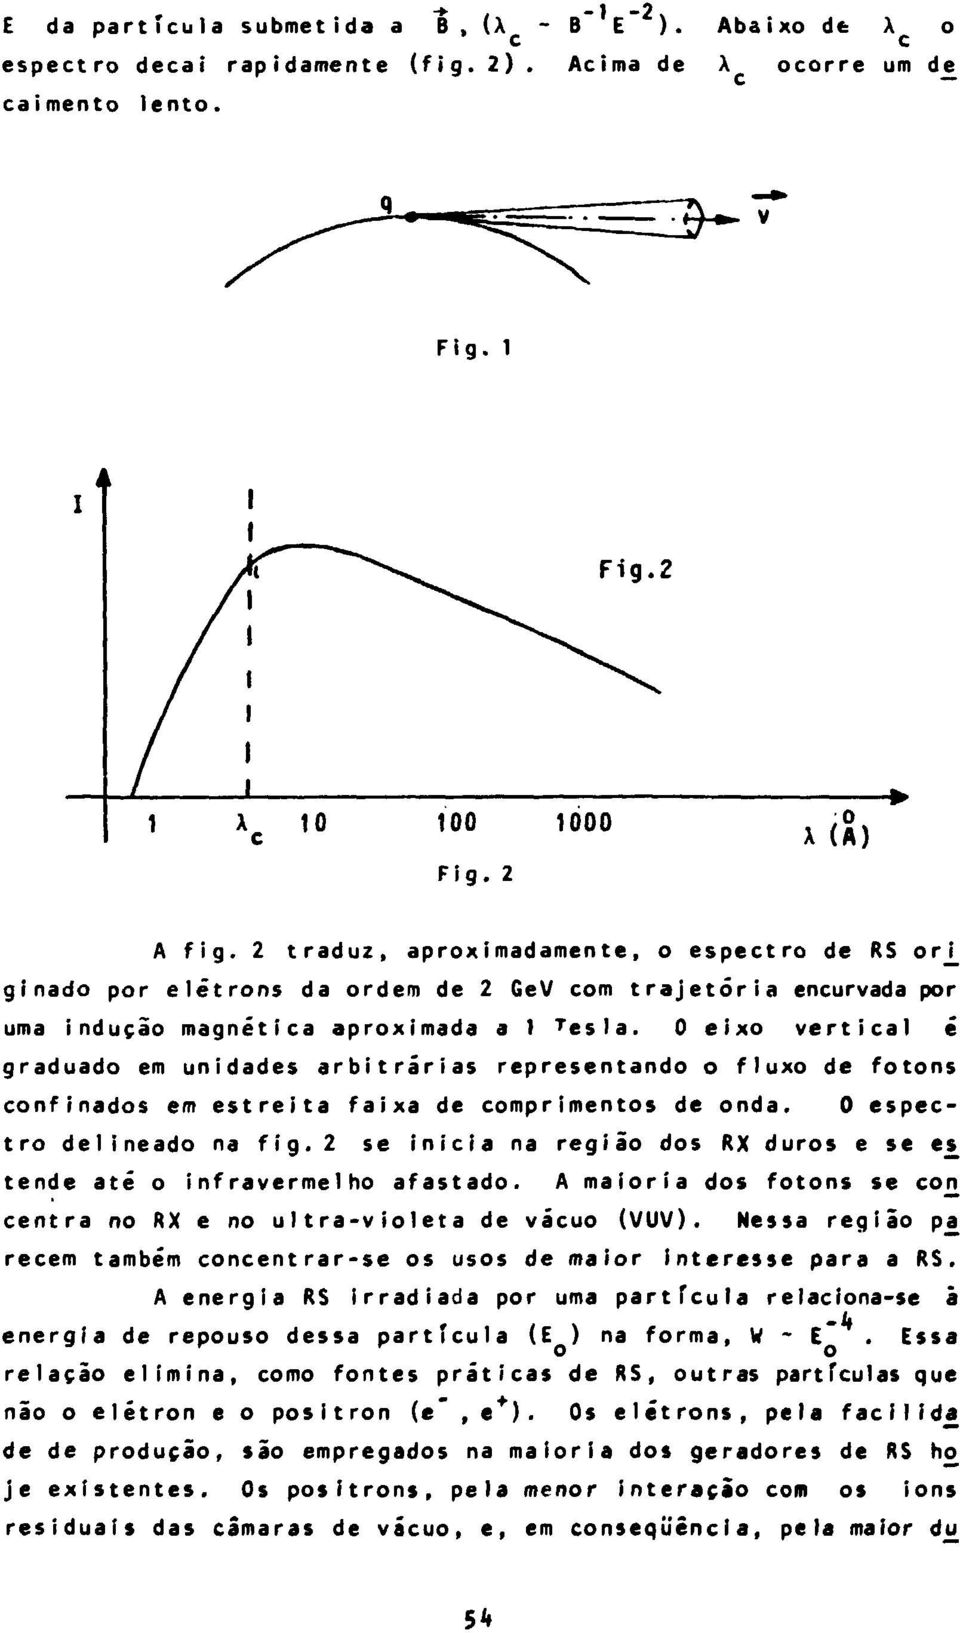 0 eixo vertical é graduado em unidades arbitrárias representando o fluxo de fotons confinados em estreita faixa de comprimentos de onda. 0 espectro delineado na fig.